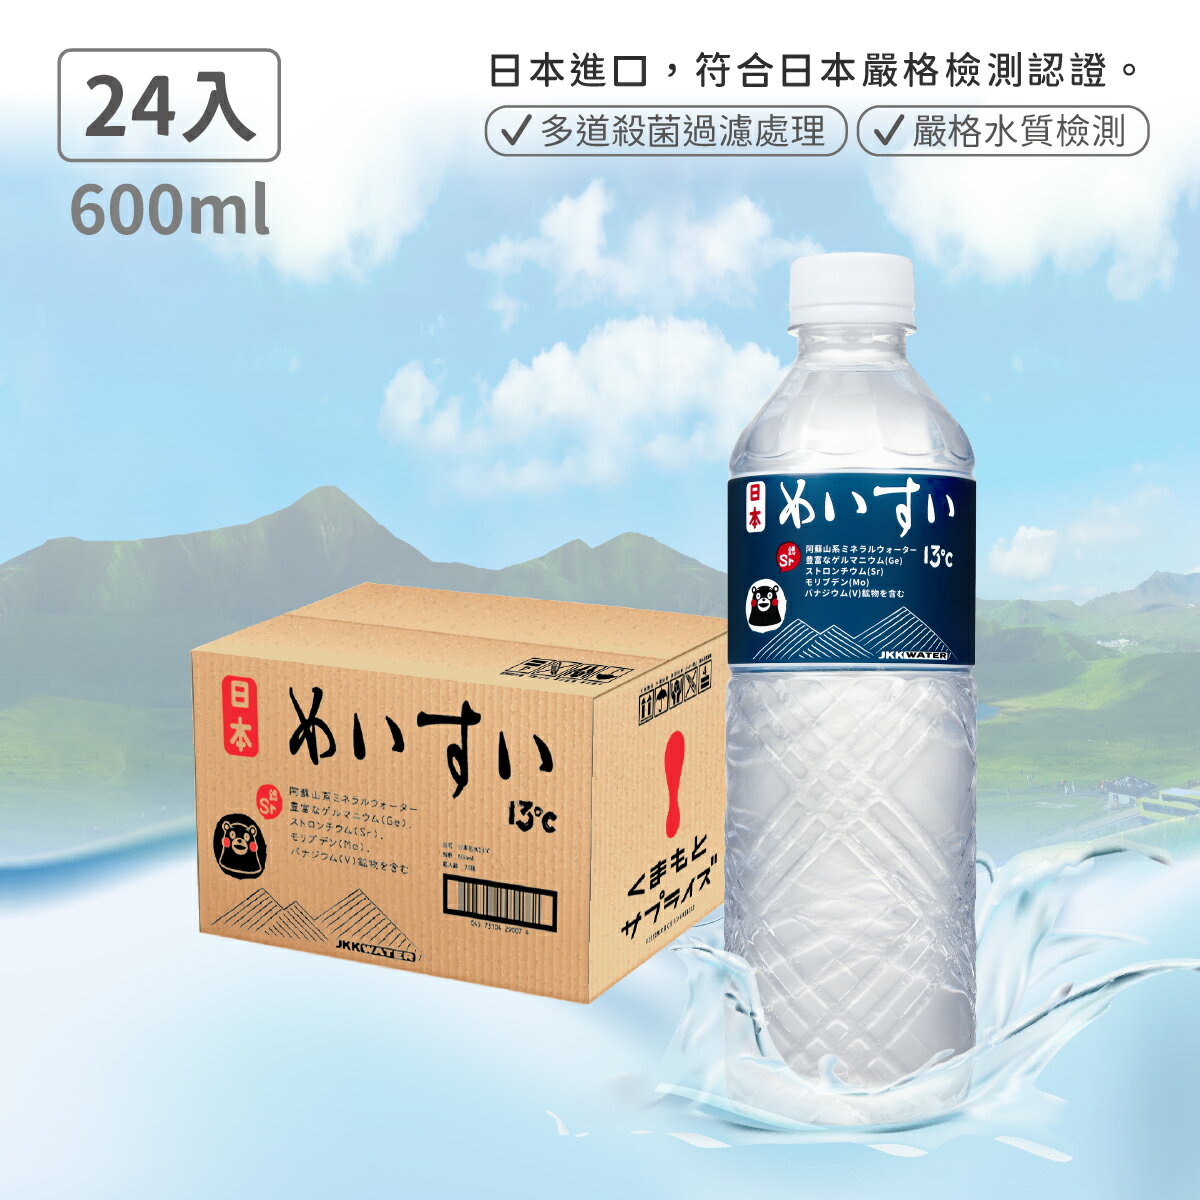 【日本名水13度C】JKKWATER(600mlx24) 日本原裝進口【礦泉水/天然水/軟水】